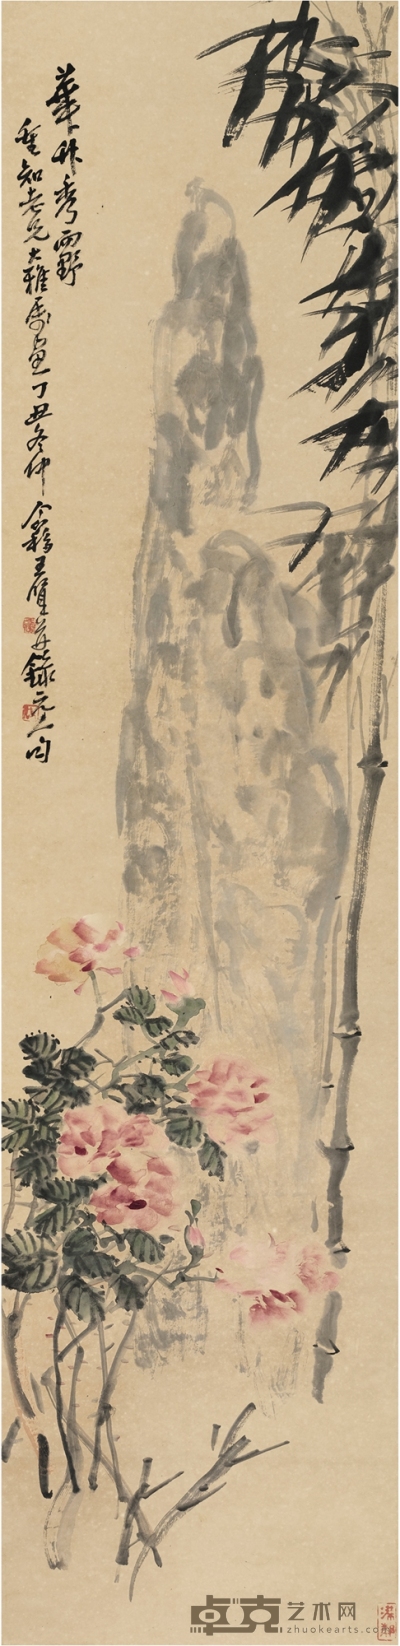 王个簃 华竹秀野图 137.5×33cm   